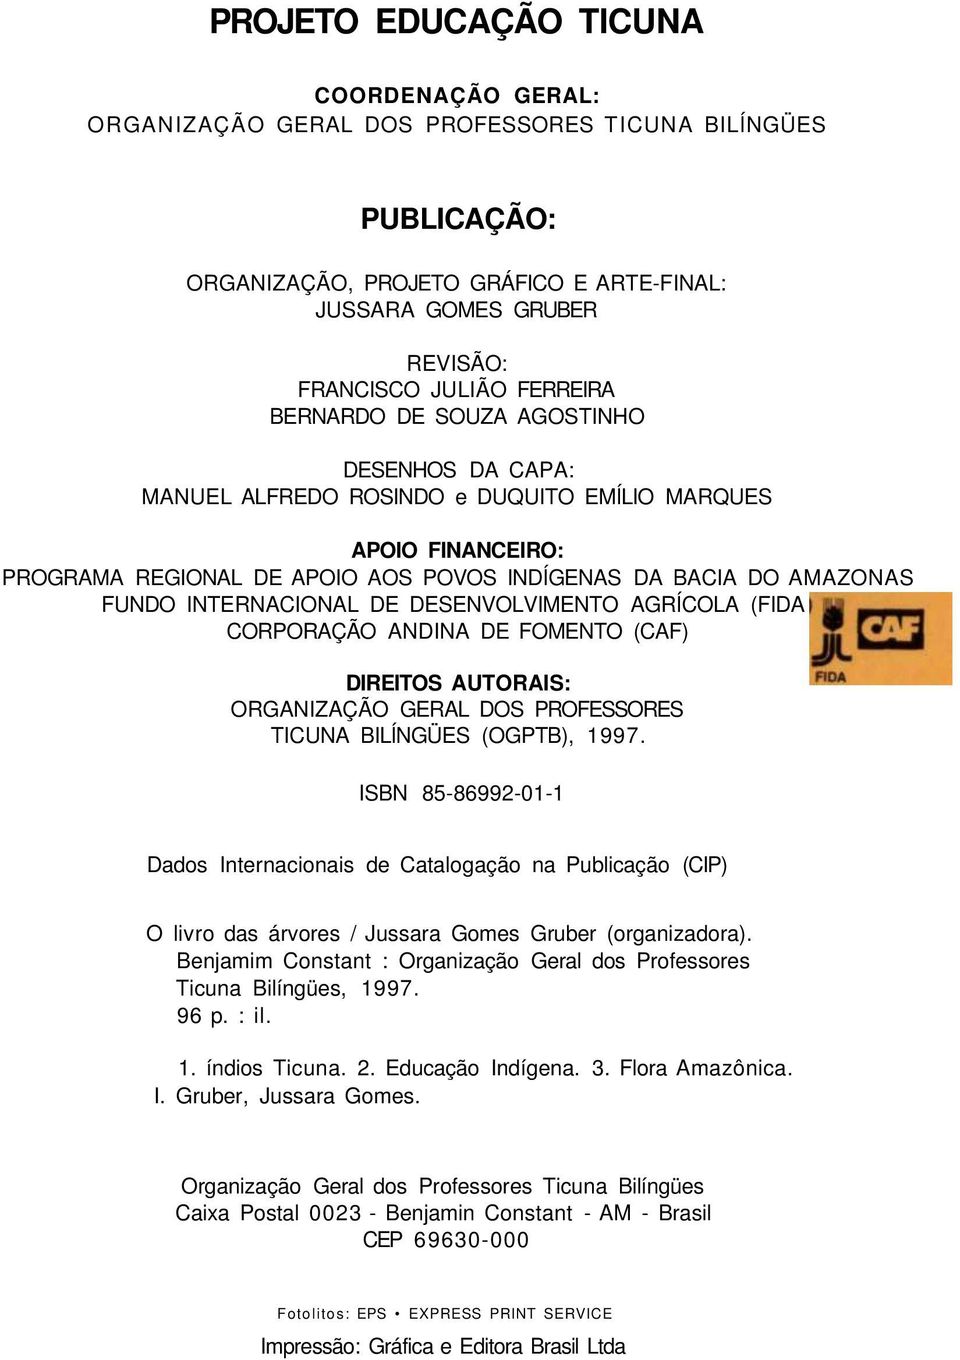 INTERNACIONAL DE DESENVOLVIMENTO AGRÍCOLA (FIDA CORPORAÇÃO ANDINA DE FOMENTO (CAF) DIREITOS AUTORAIS: ORGANIZAÇÃO GERAL DOS PROFESSORES TICUNA BILÍNGÜES (OGPTB), 1997.